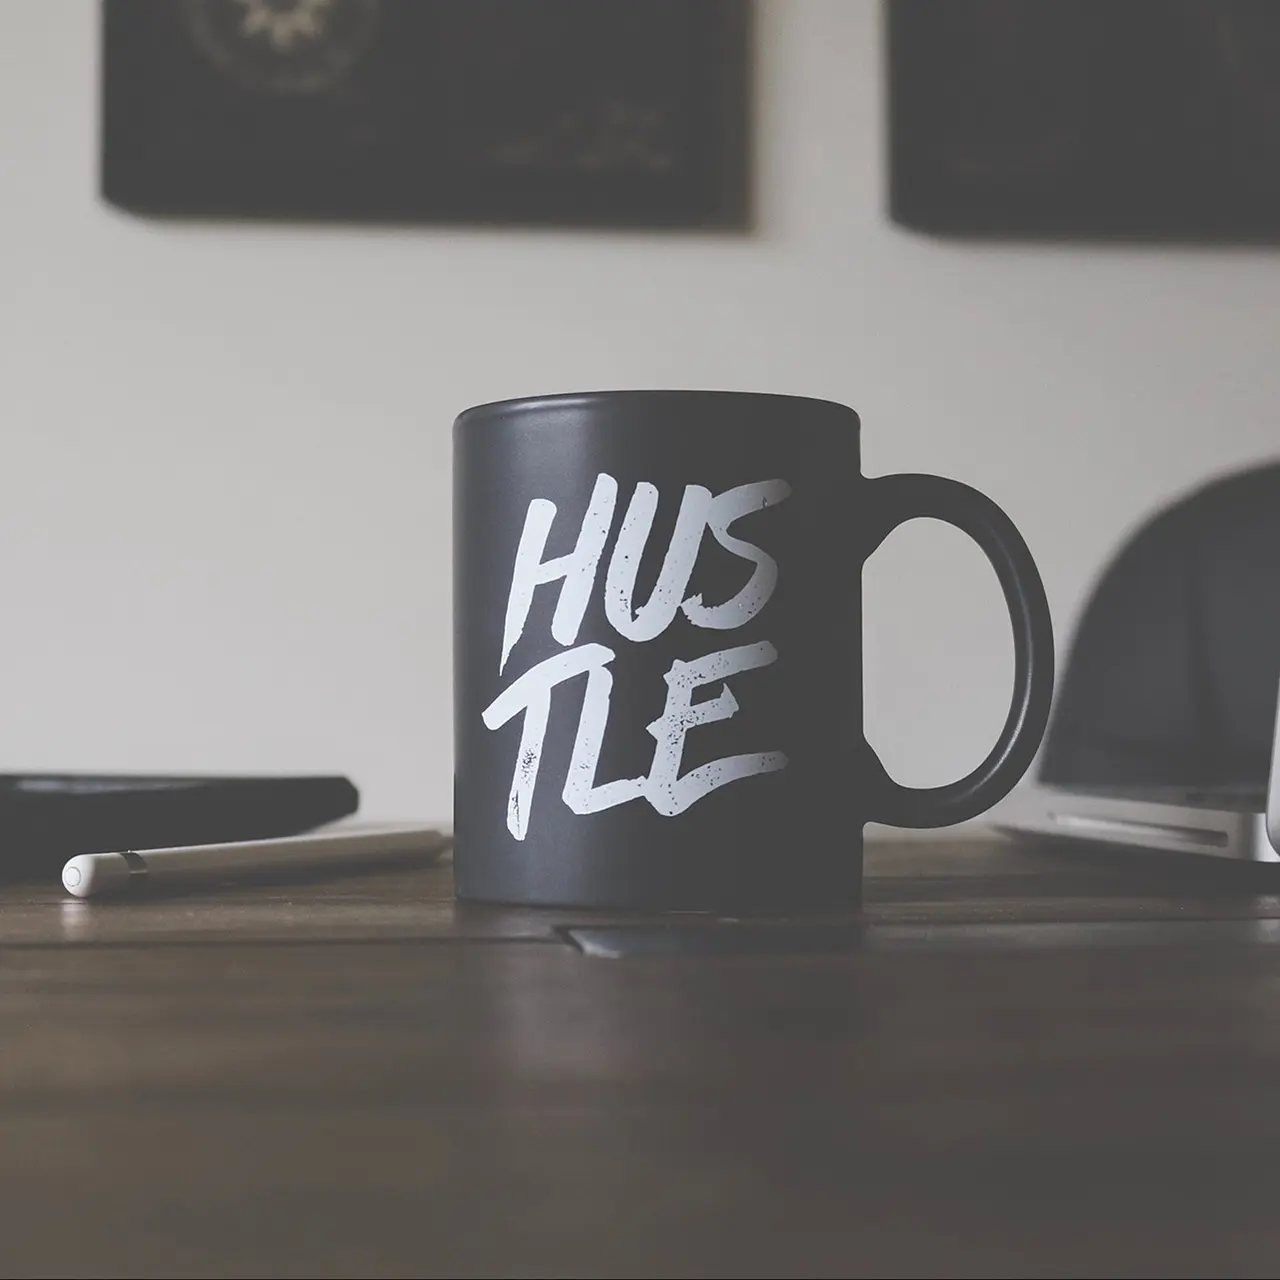 Black mug on desk that says hustle.